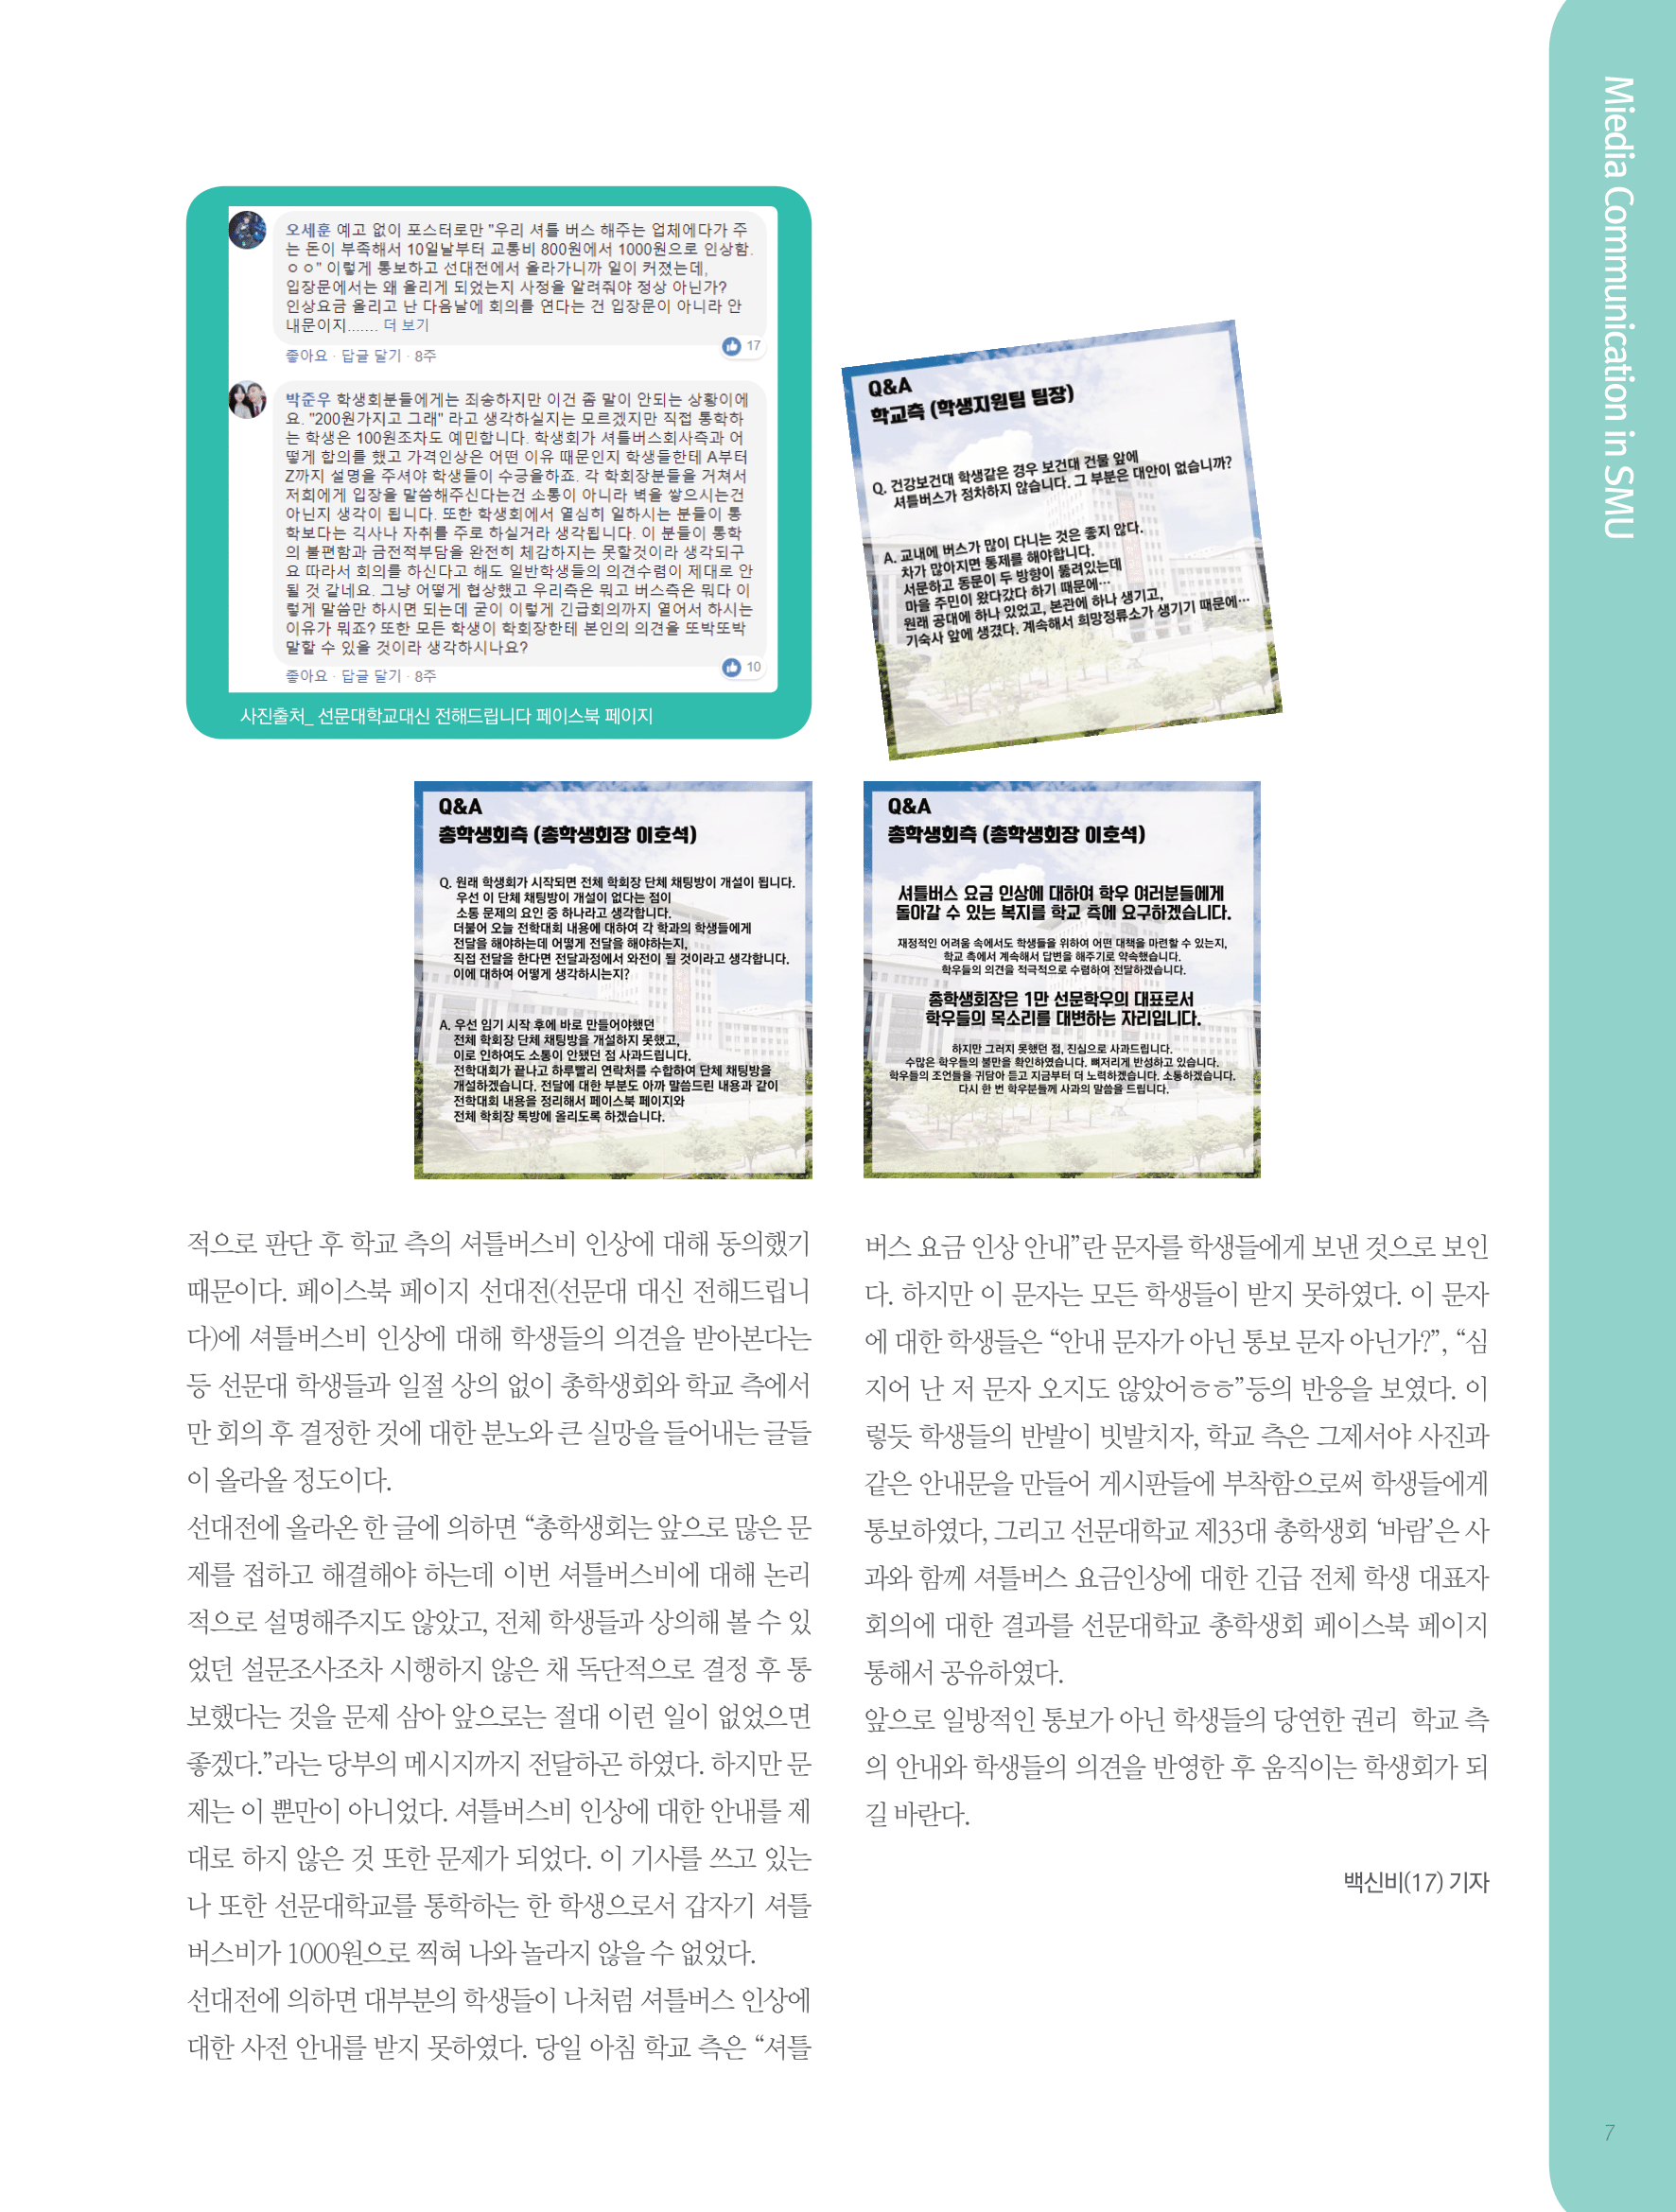 뜻새김 신문 72호 7